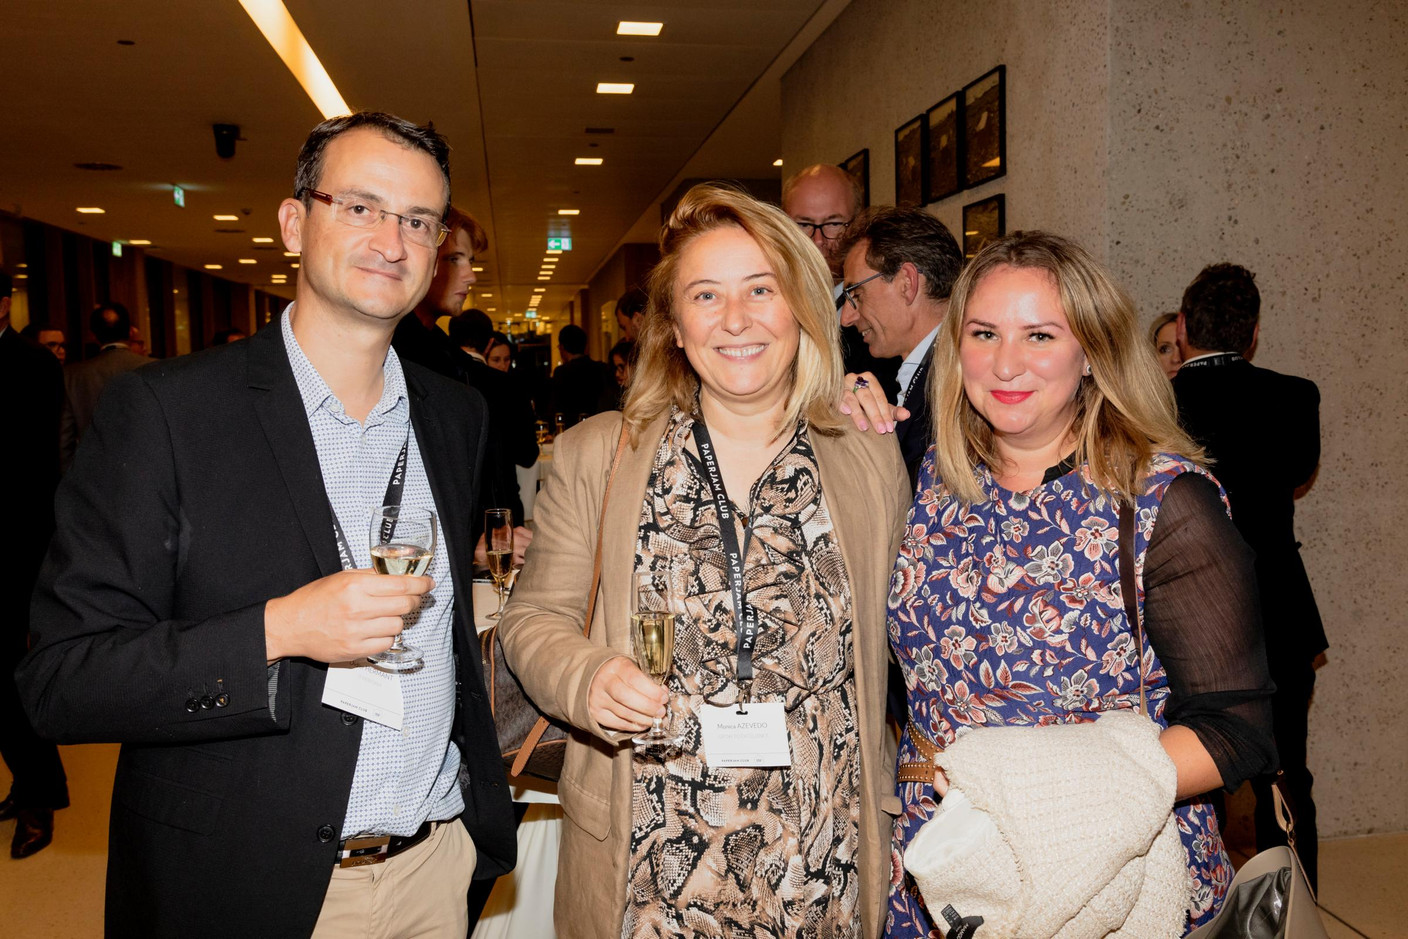 Didier Hermant (IT Perform), Monica Azevedo (Grow to excellence) et Larissa Thomas (Imperium) (Photo: Jan Hanrion / Maison Moderne)